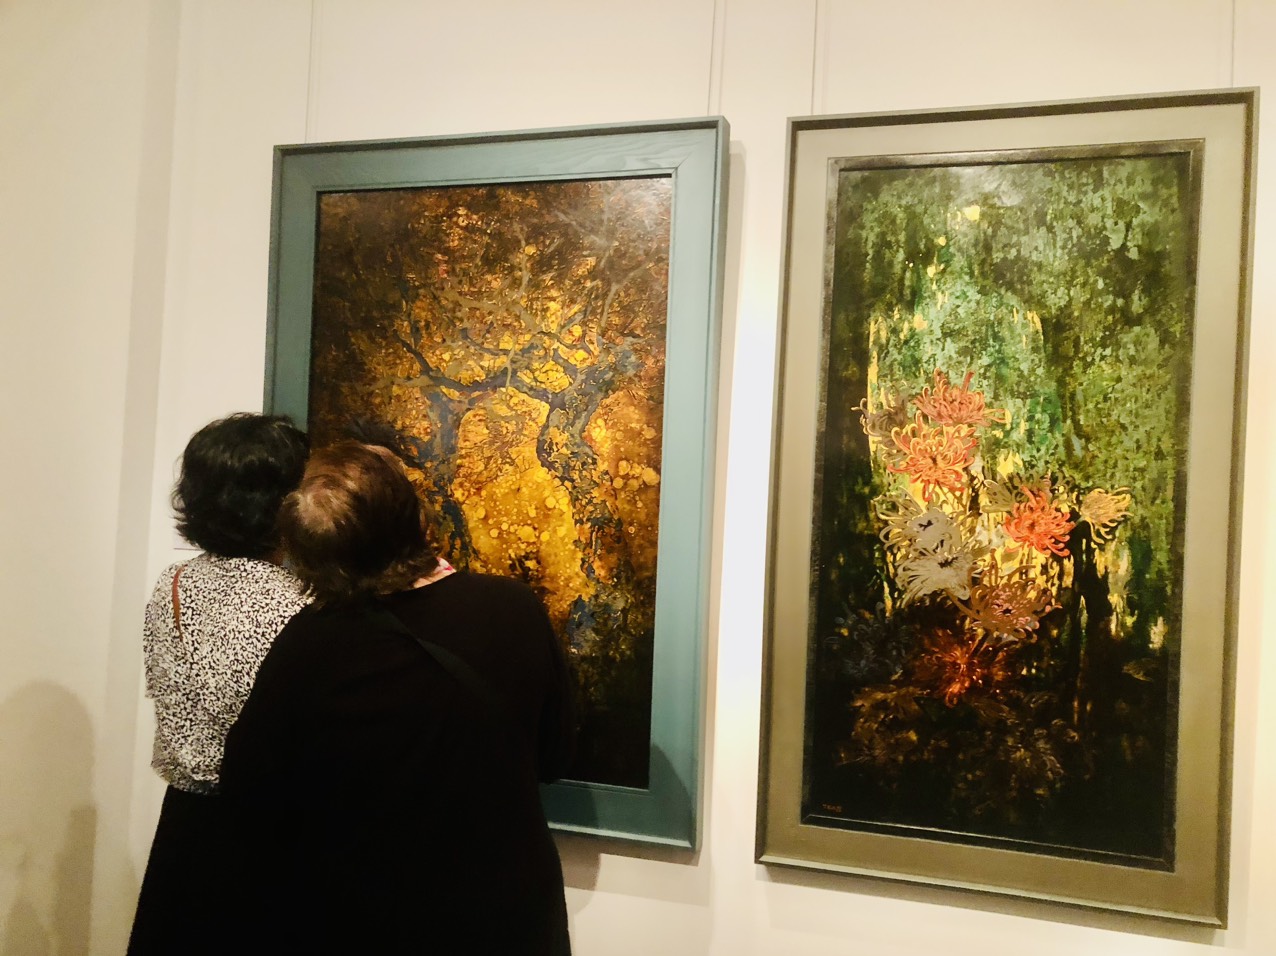  Ngỡ ngàng với 3 bức tranh nude trong triển lãm tranh sơn mài ở Bảo tàng Mỹ thuật Việt Nam   - Ảnh 3.